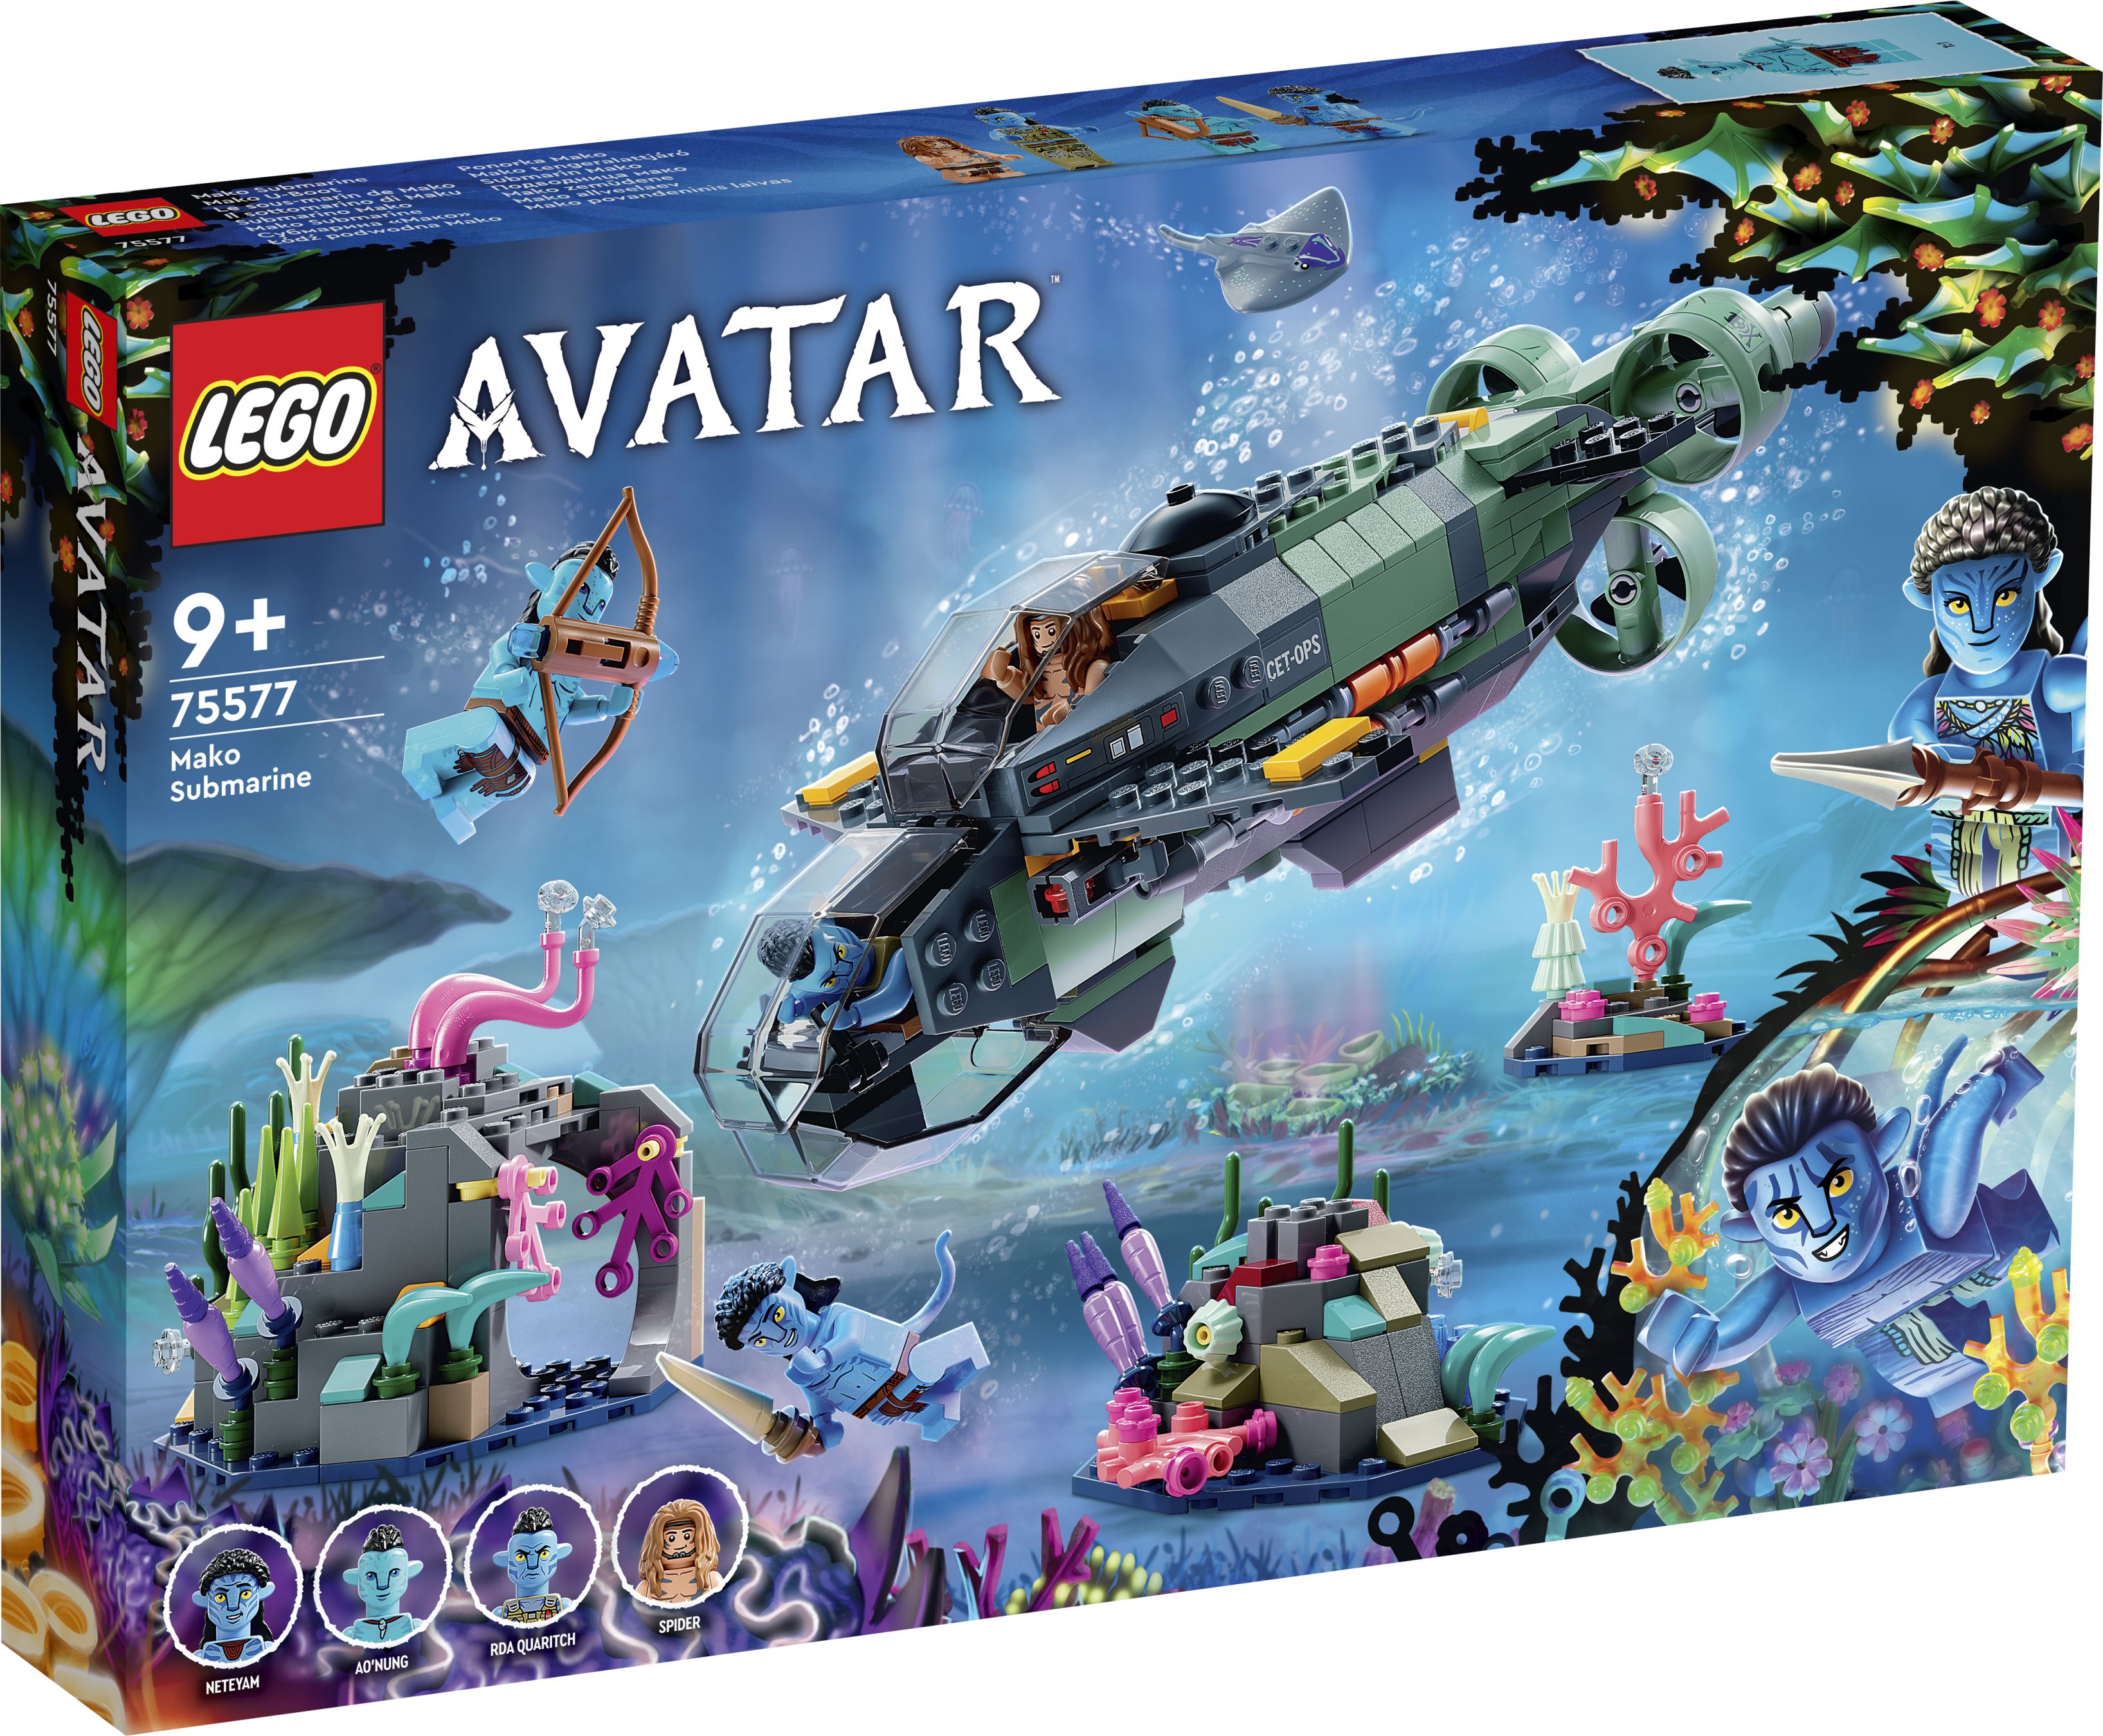 LEGO Avatar 75577 Mako U-Boot LEGO_75577_Box1_v29.jpg